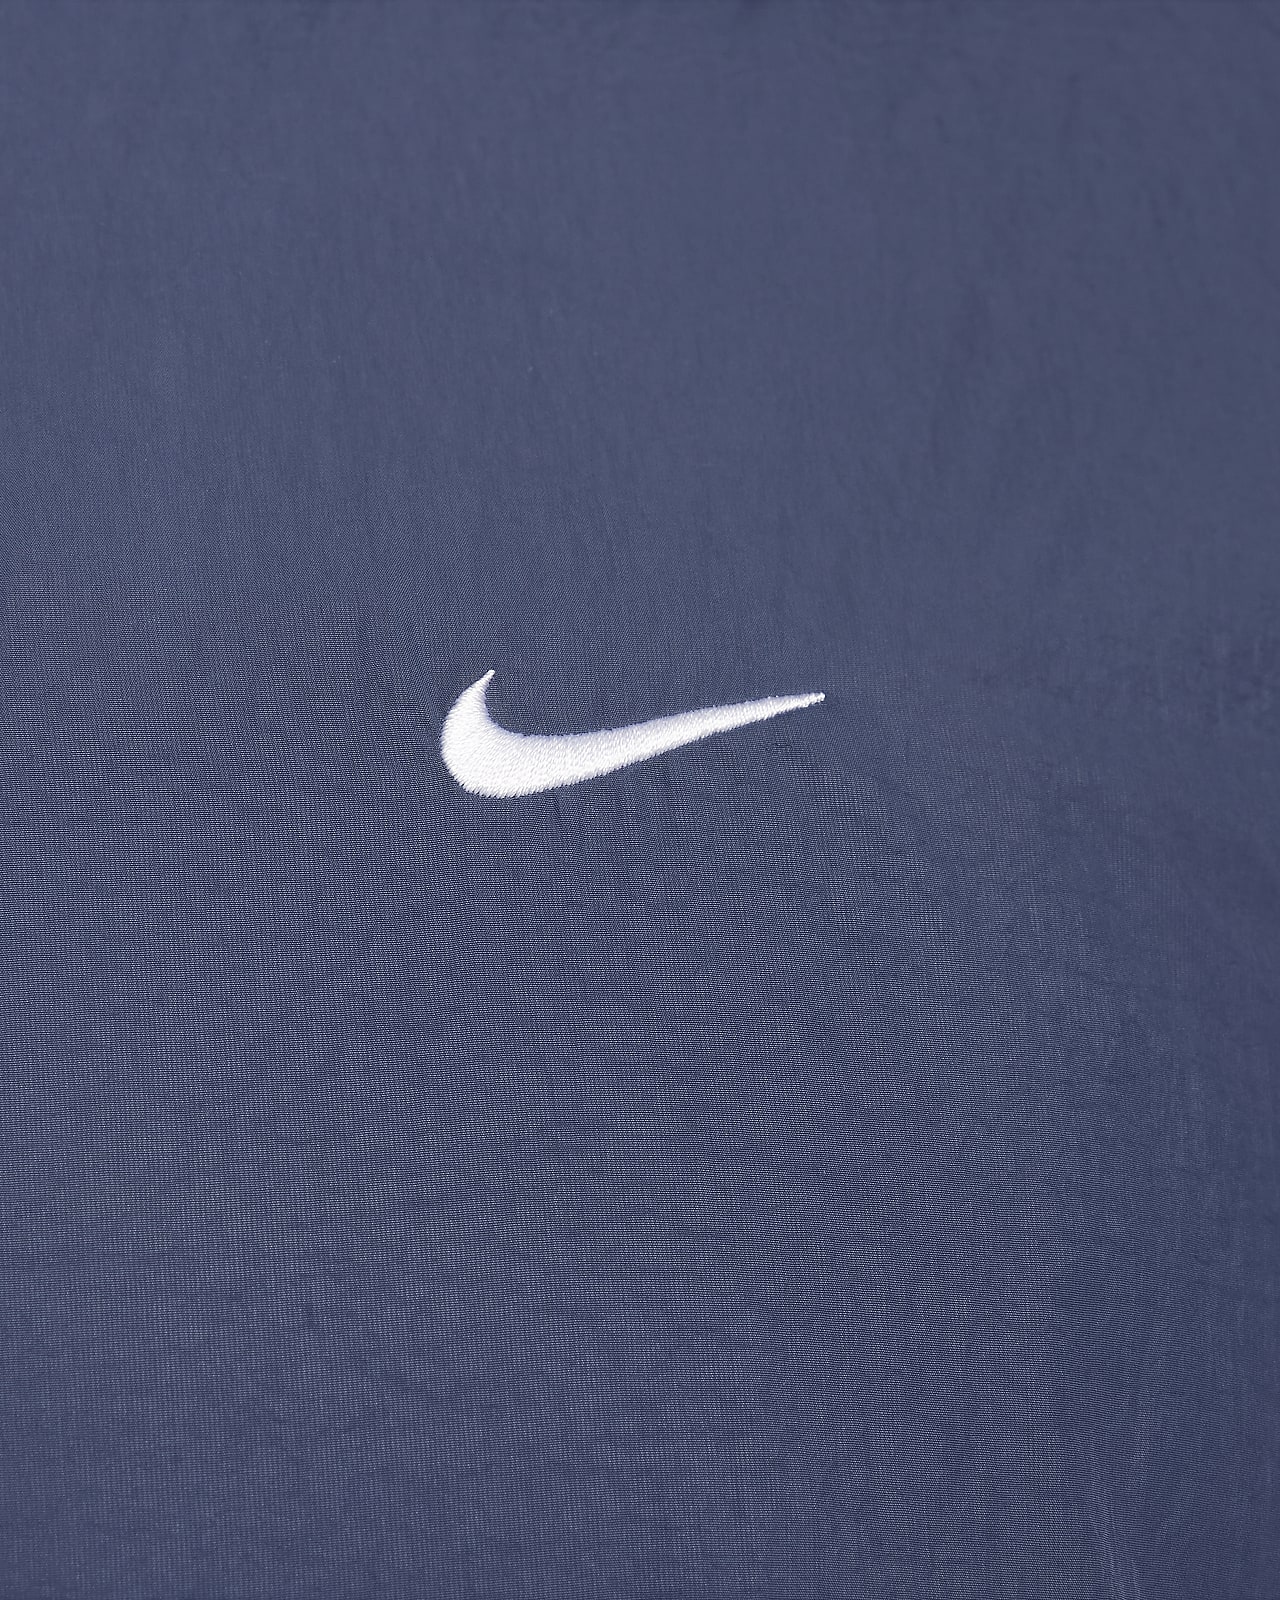 Nike Swoosh.